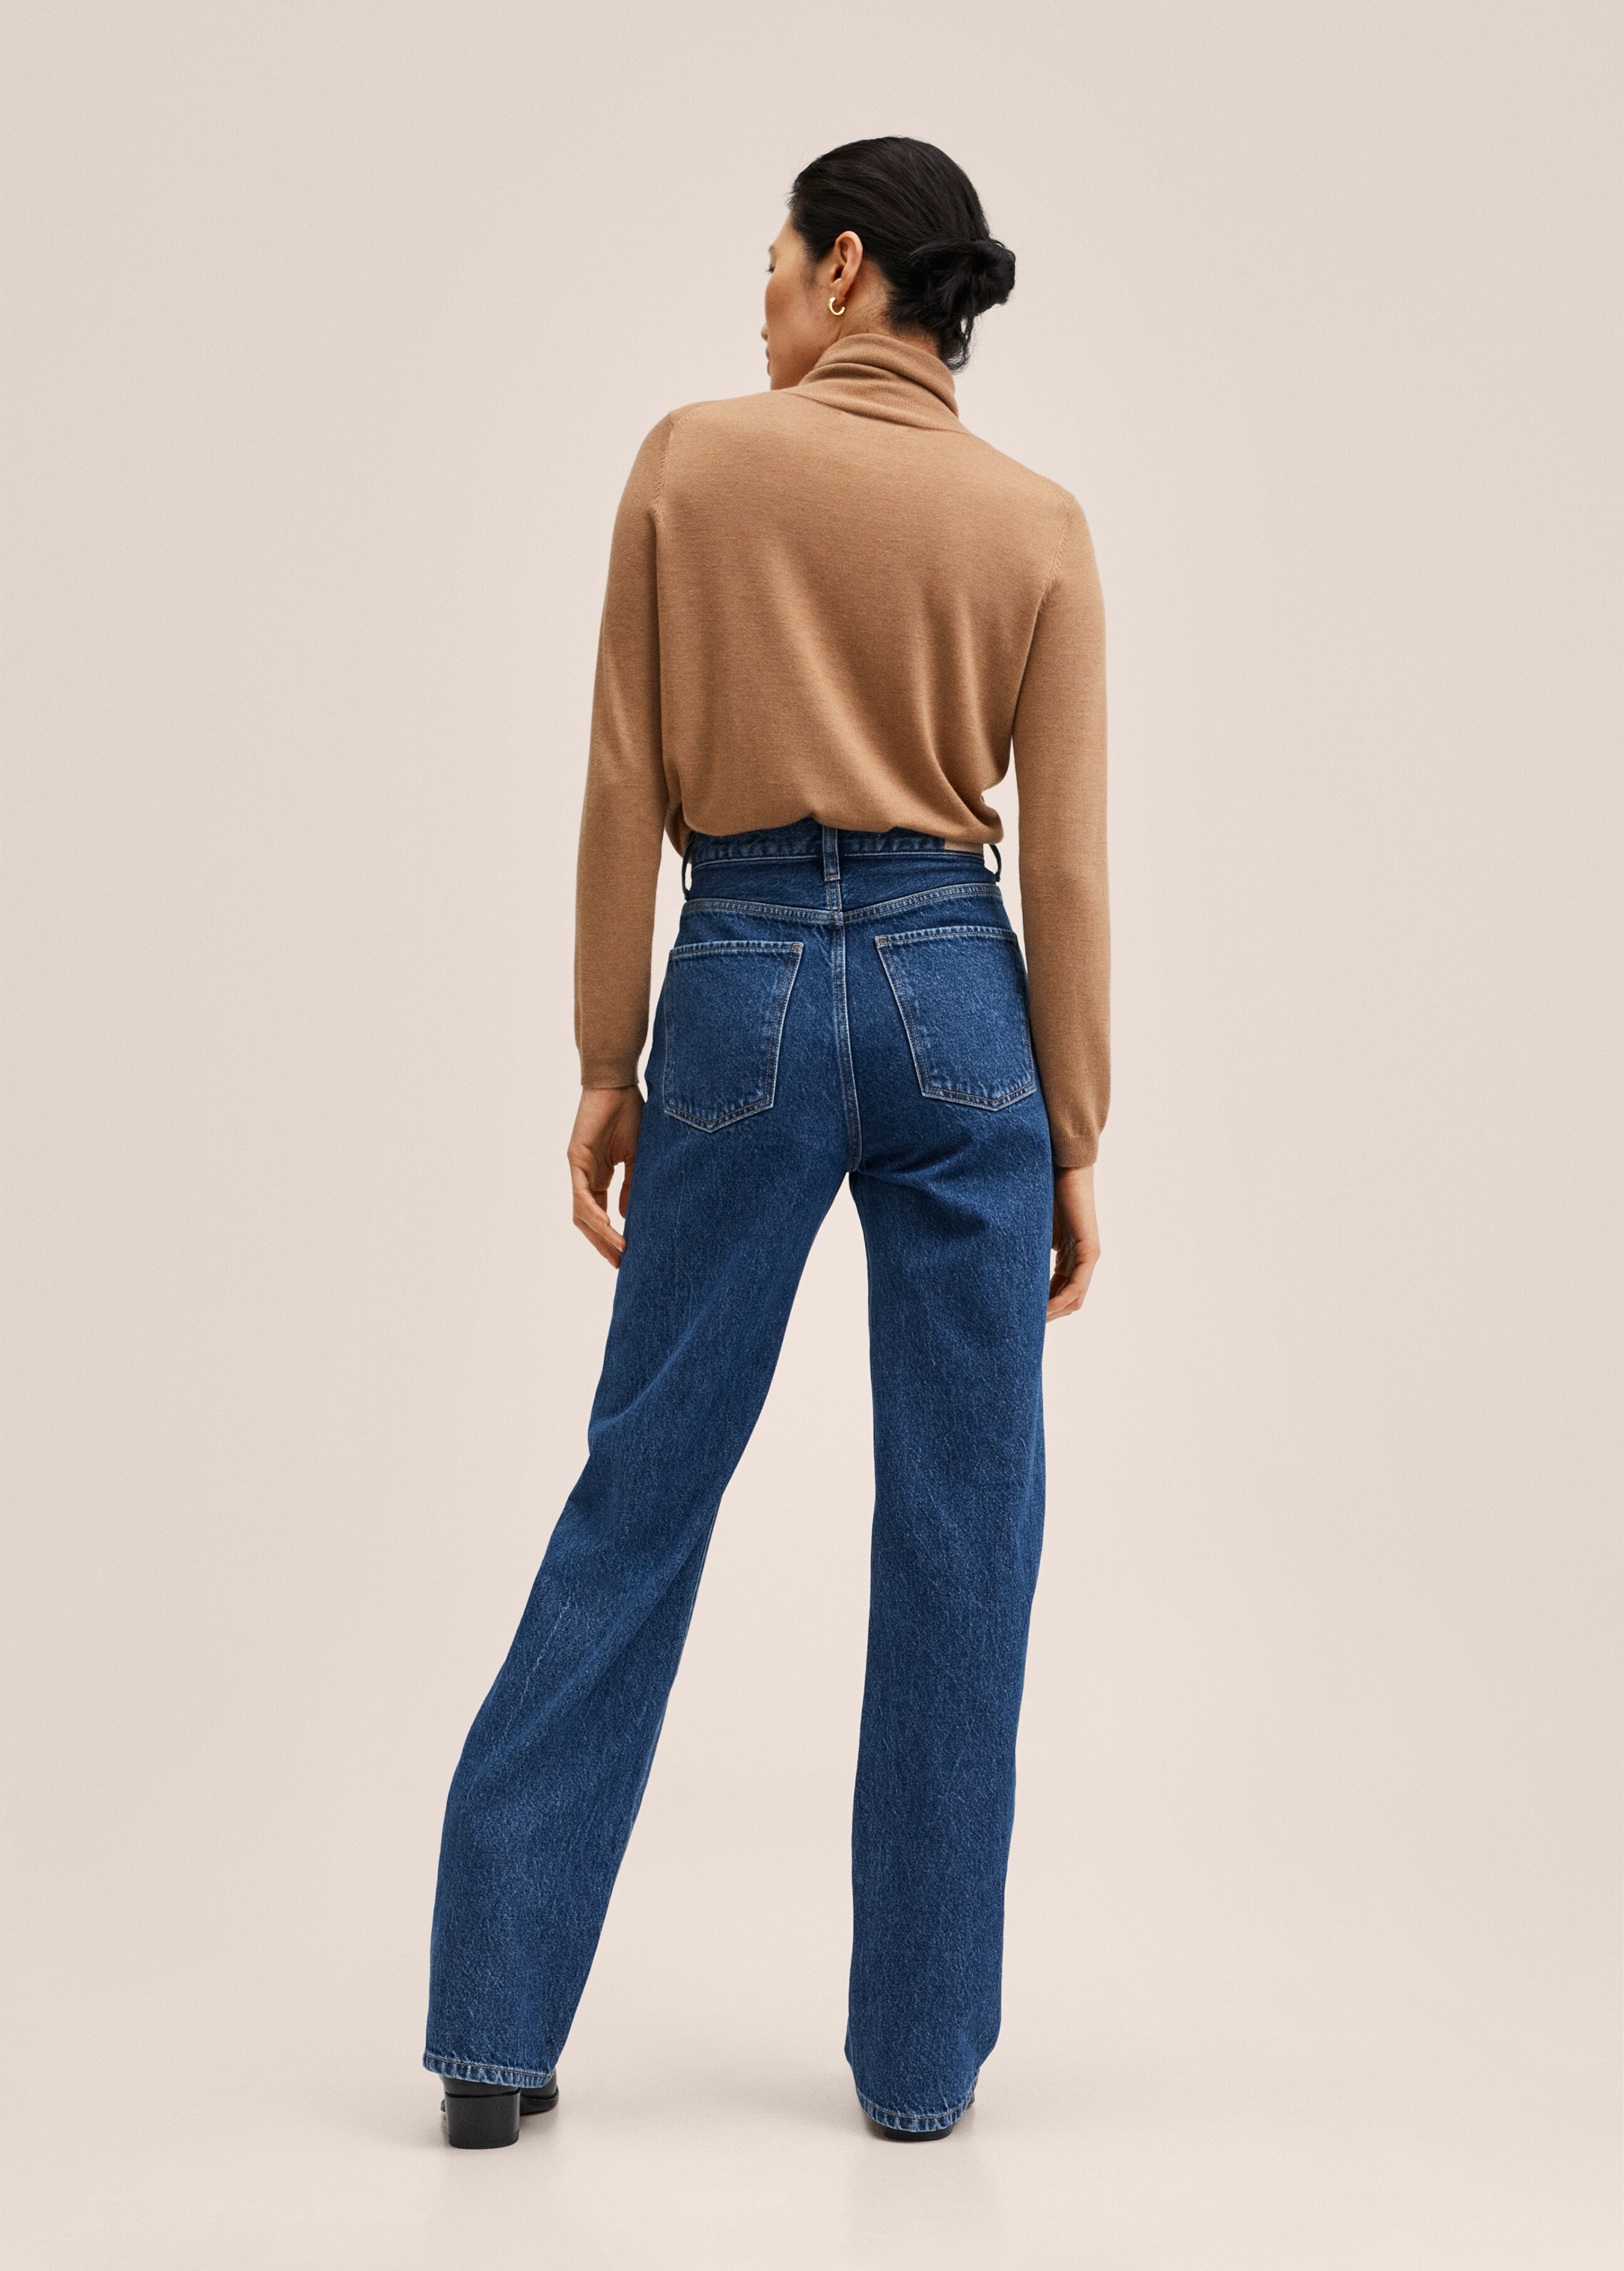 Gerade Jeans mit hohem Bund - Rückseite des Artikels